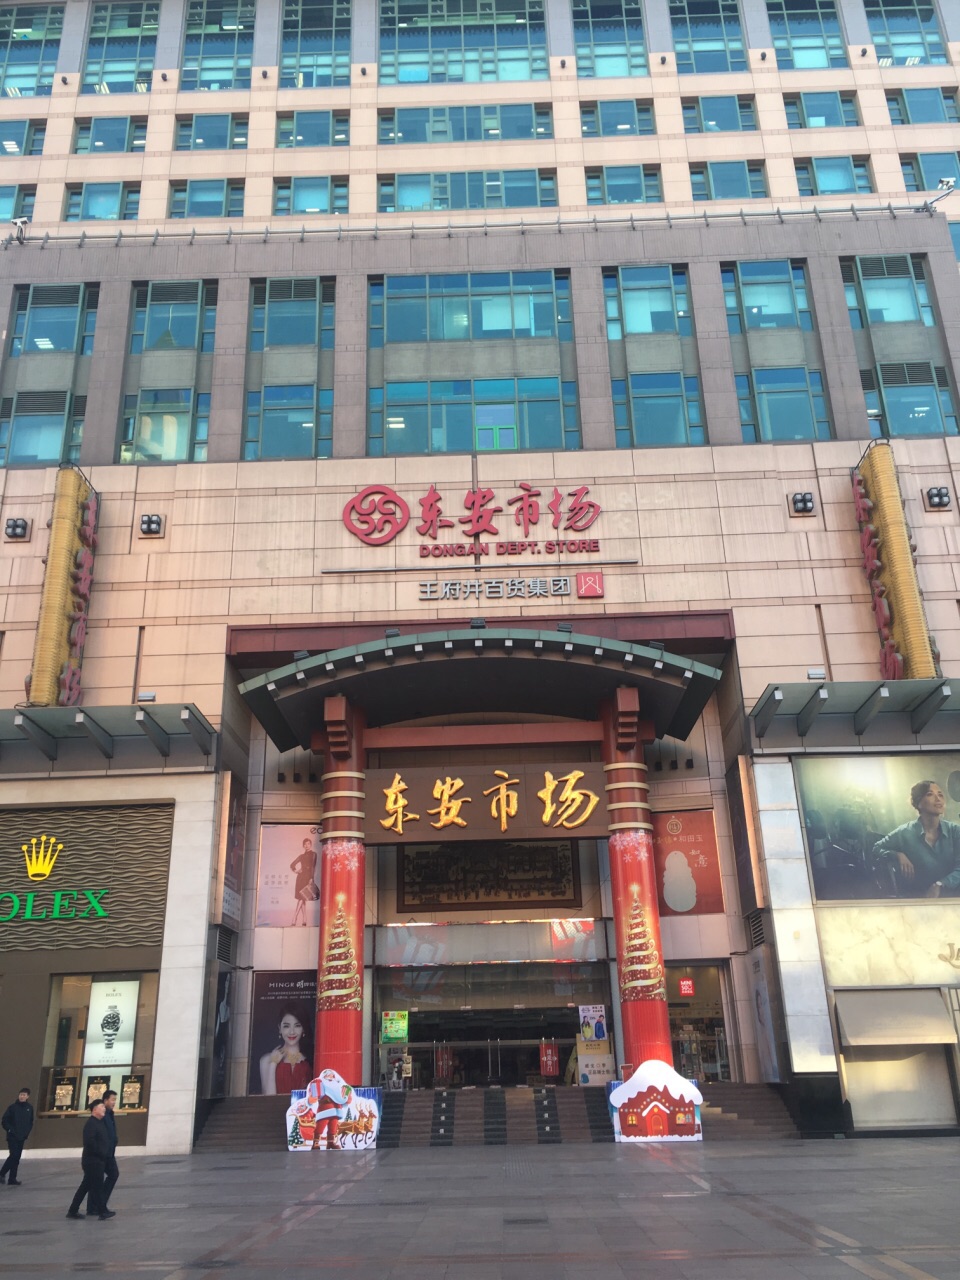 【携程攻略】北京东安市场购物,东安市场市场已经有百年历史了,90年代